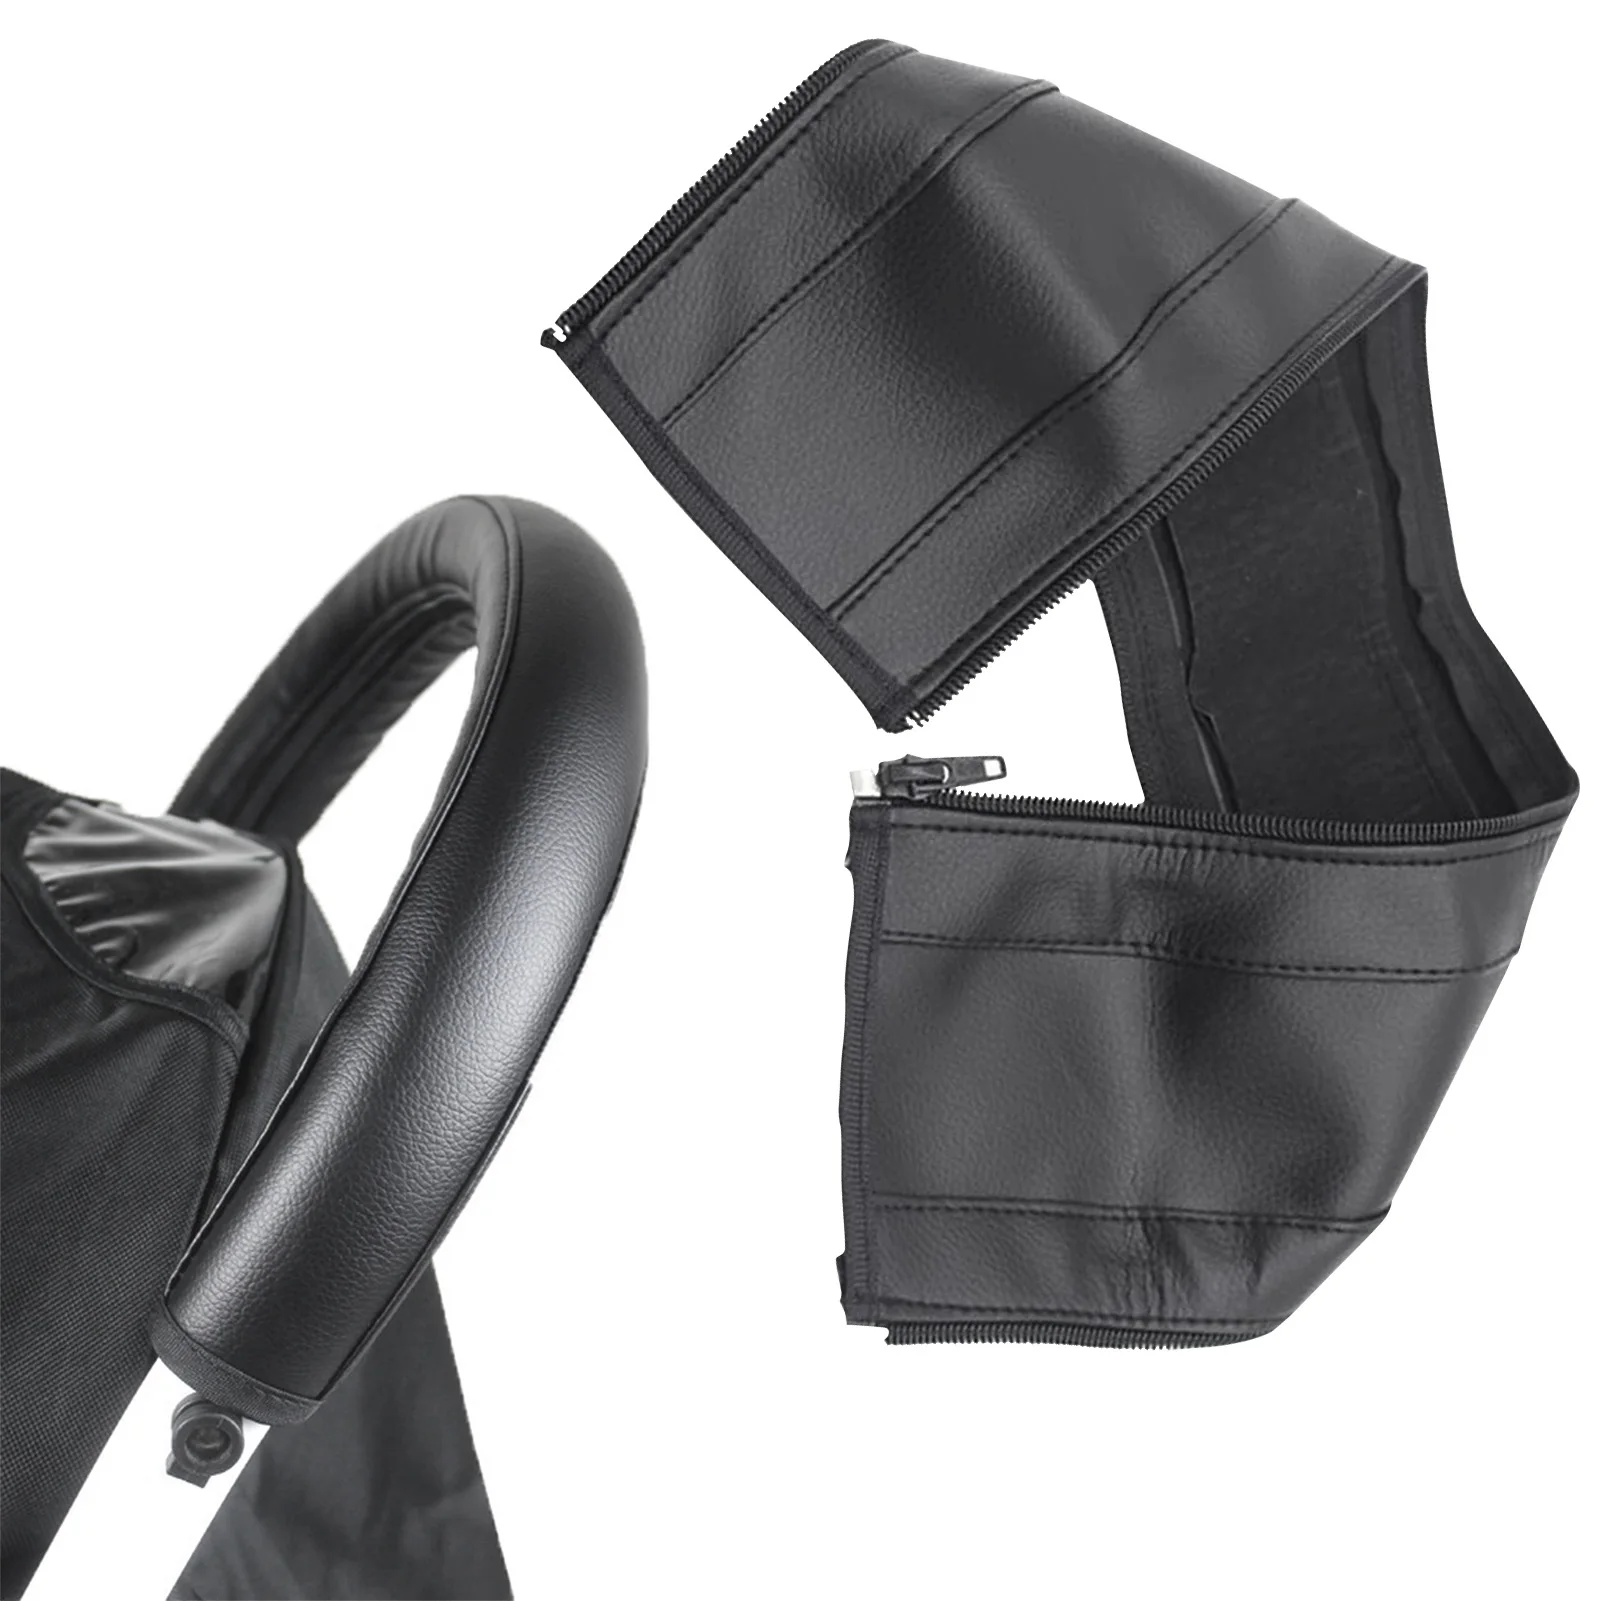 Чехол для ручки коляски, защитный чехол для подлокотника детской коляски, складные моющиеся кожаные перчатки с открывающимися молниями